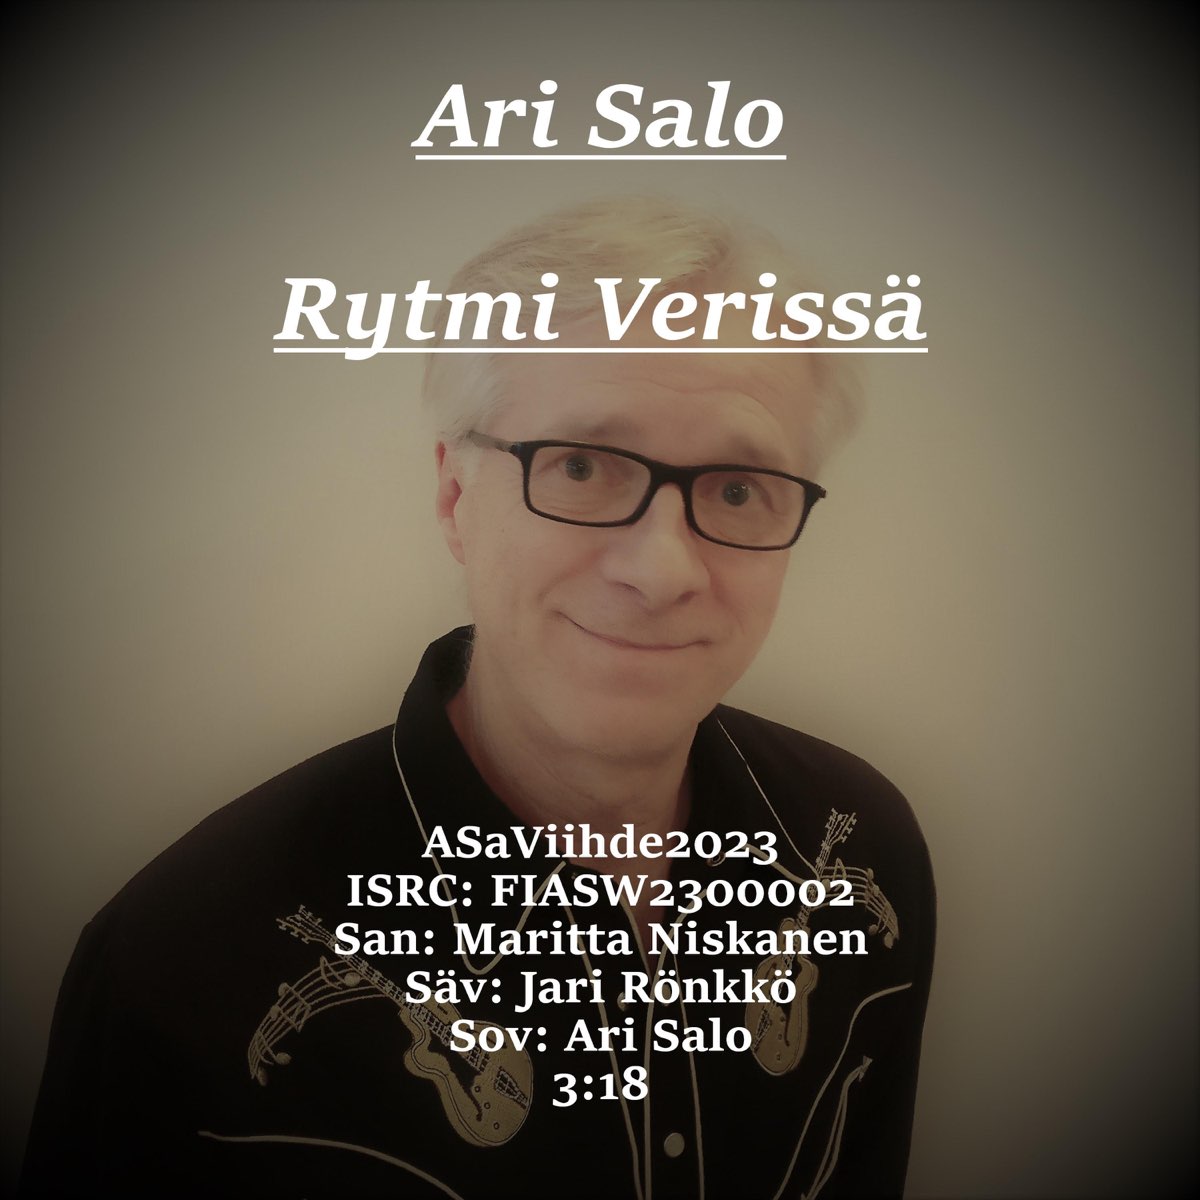 Rytmi Verissä - Single - Album by Ari Salo - Apple Music